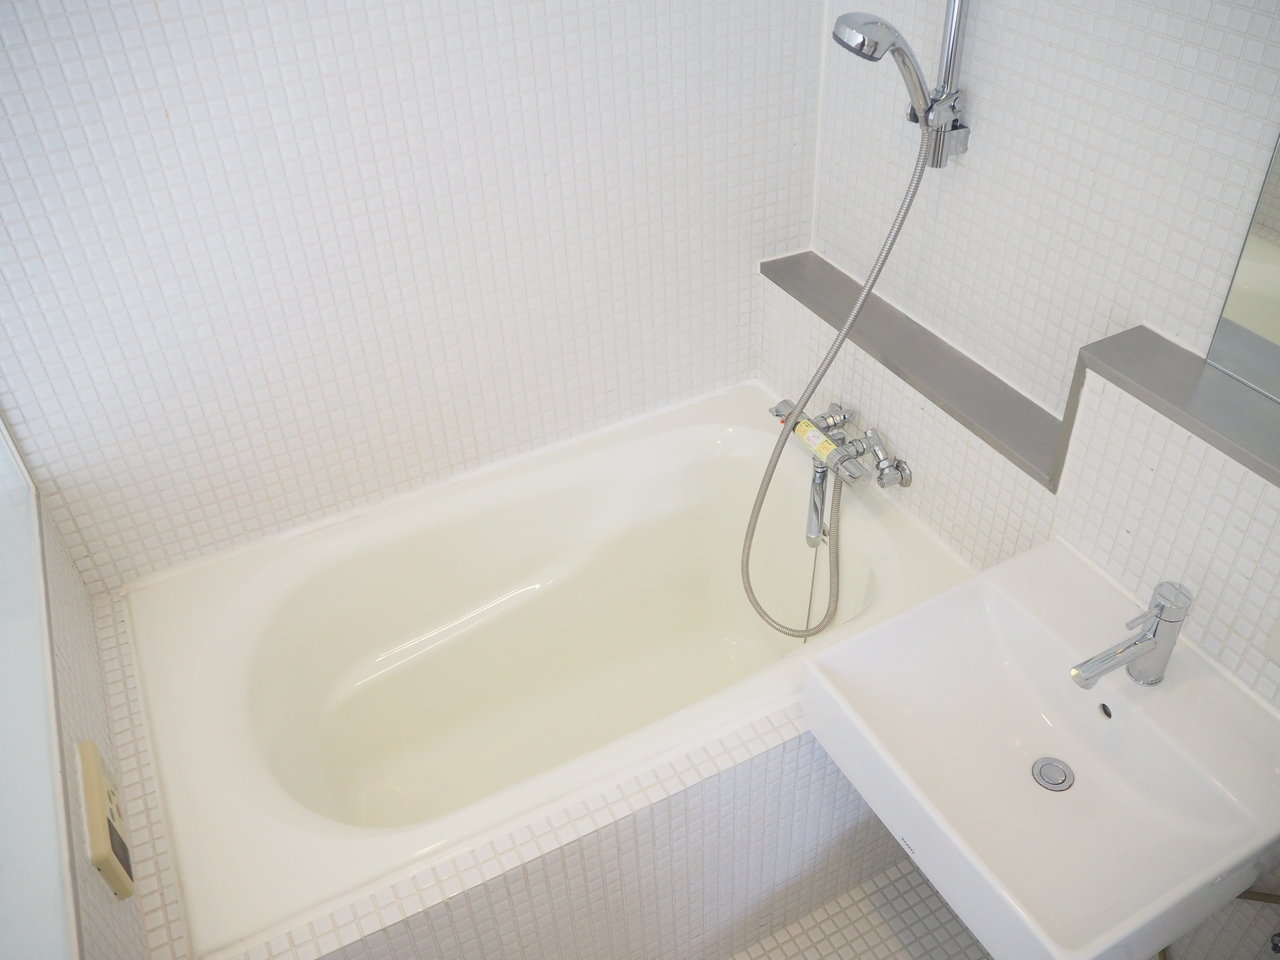 水回りには浴室乾燥機もついています。見える箇所なのでお風呂上りにすぐにお掃除をして乾燥すれば、常にきれいな状態を保っていられそうですね。